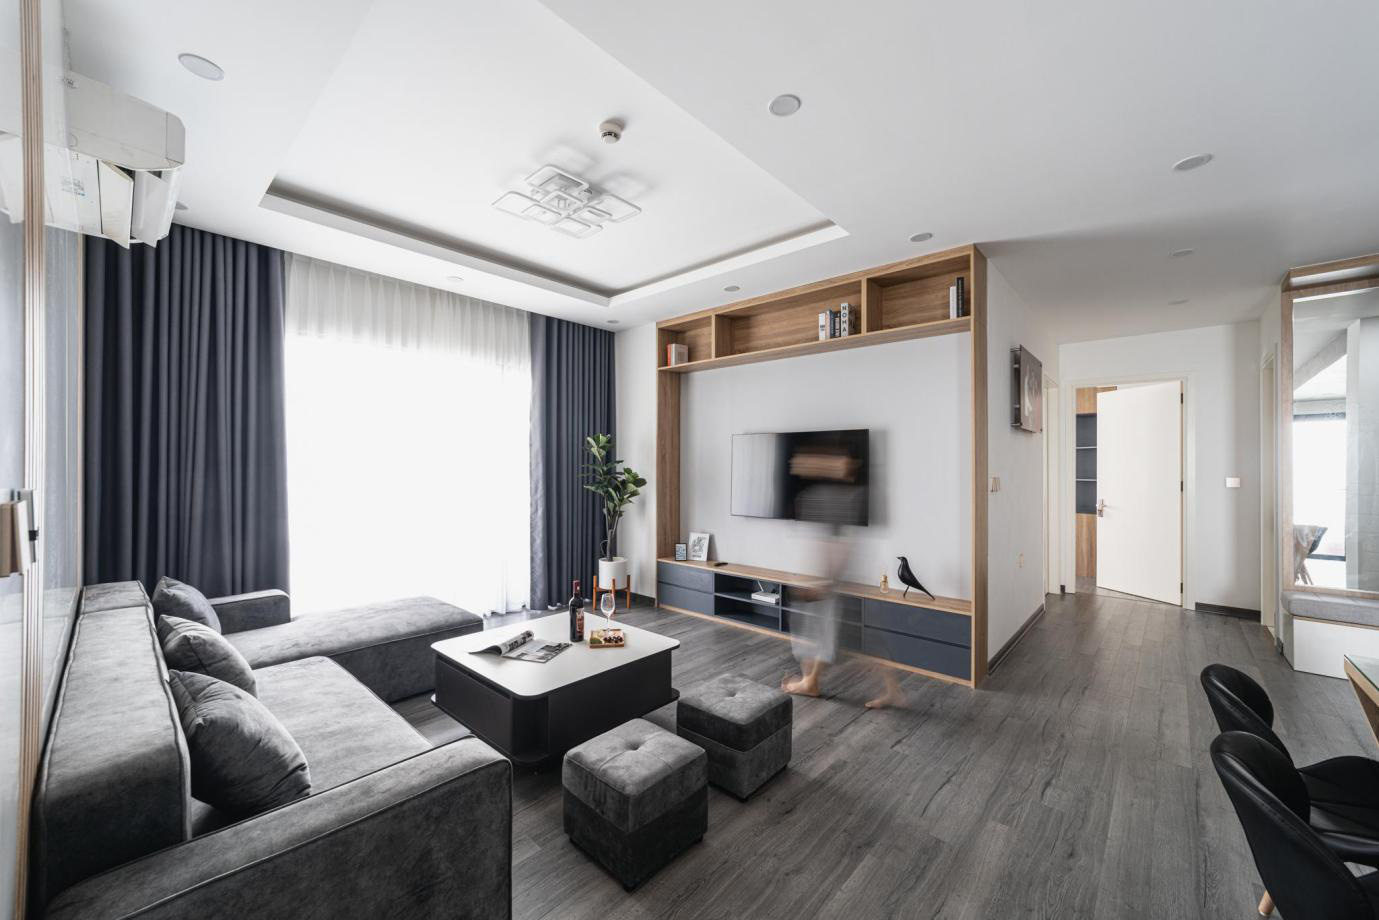 Giải pháp thiết kế nội thất chung cư liên thông phòng khách và bếp ấn tượng, hiệu quả - Ảnh 1.